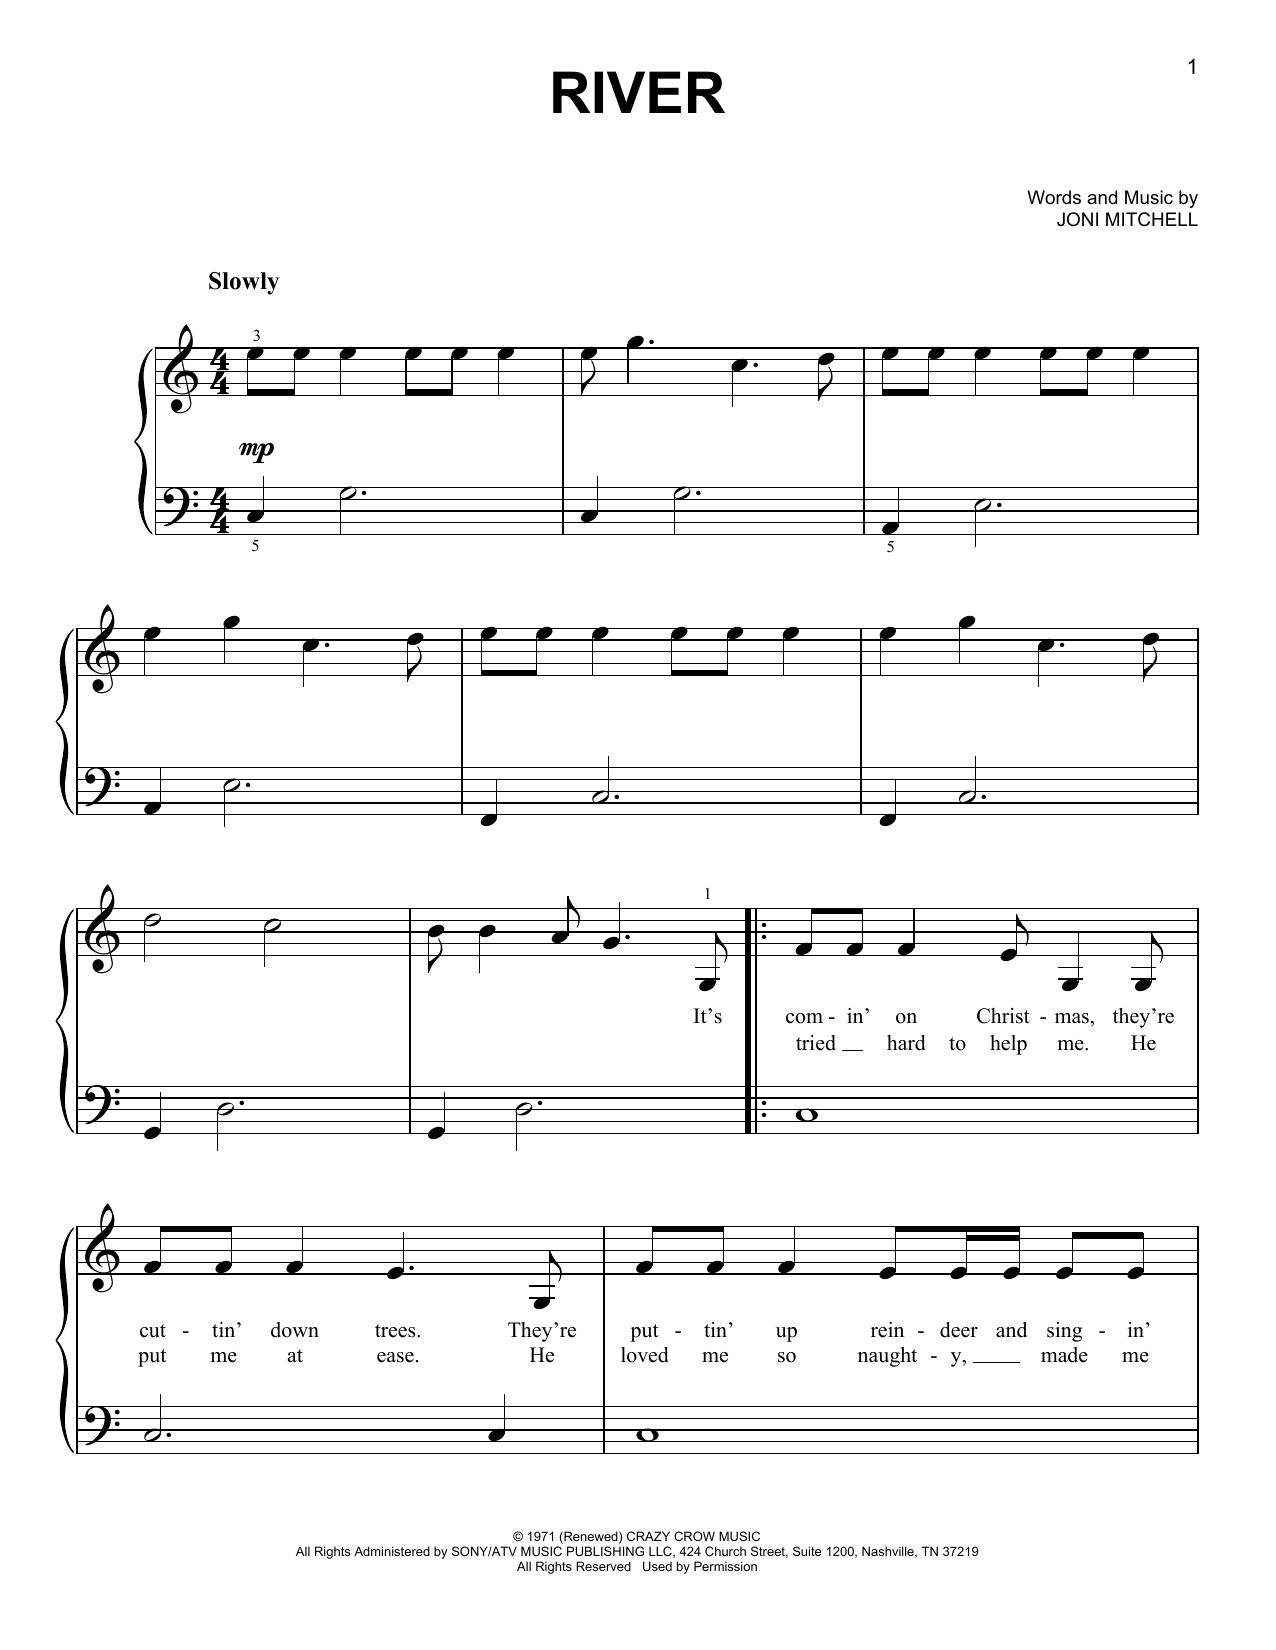 Linda Ronstadt River Sheet Music Notes & Chords for Ukulele - Download or Print PDF